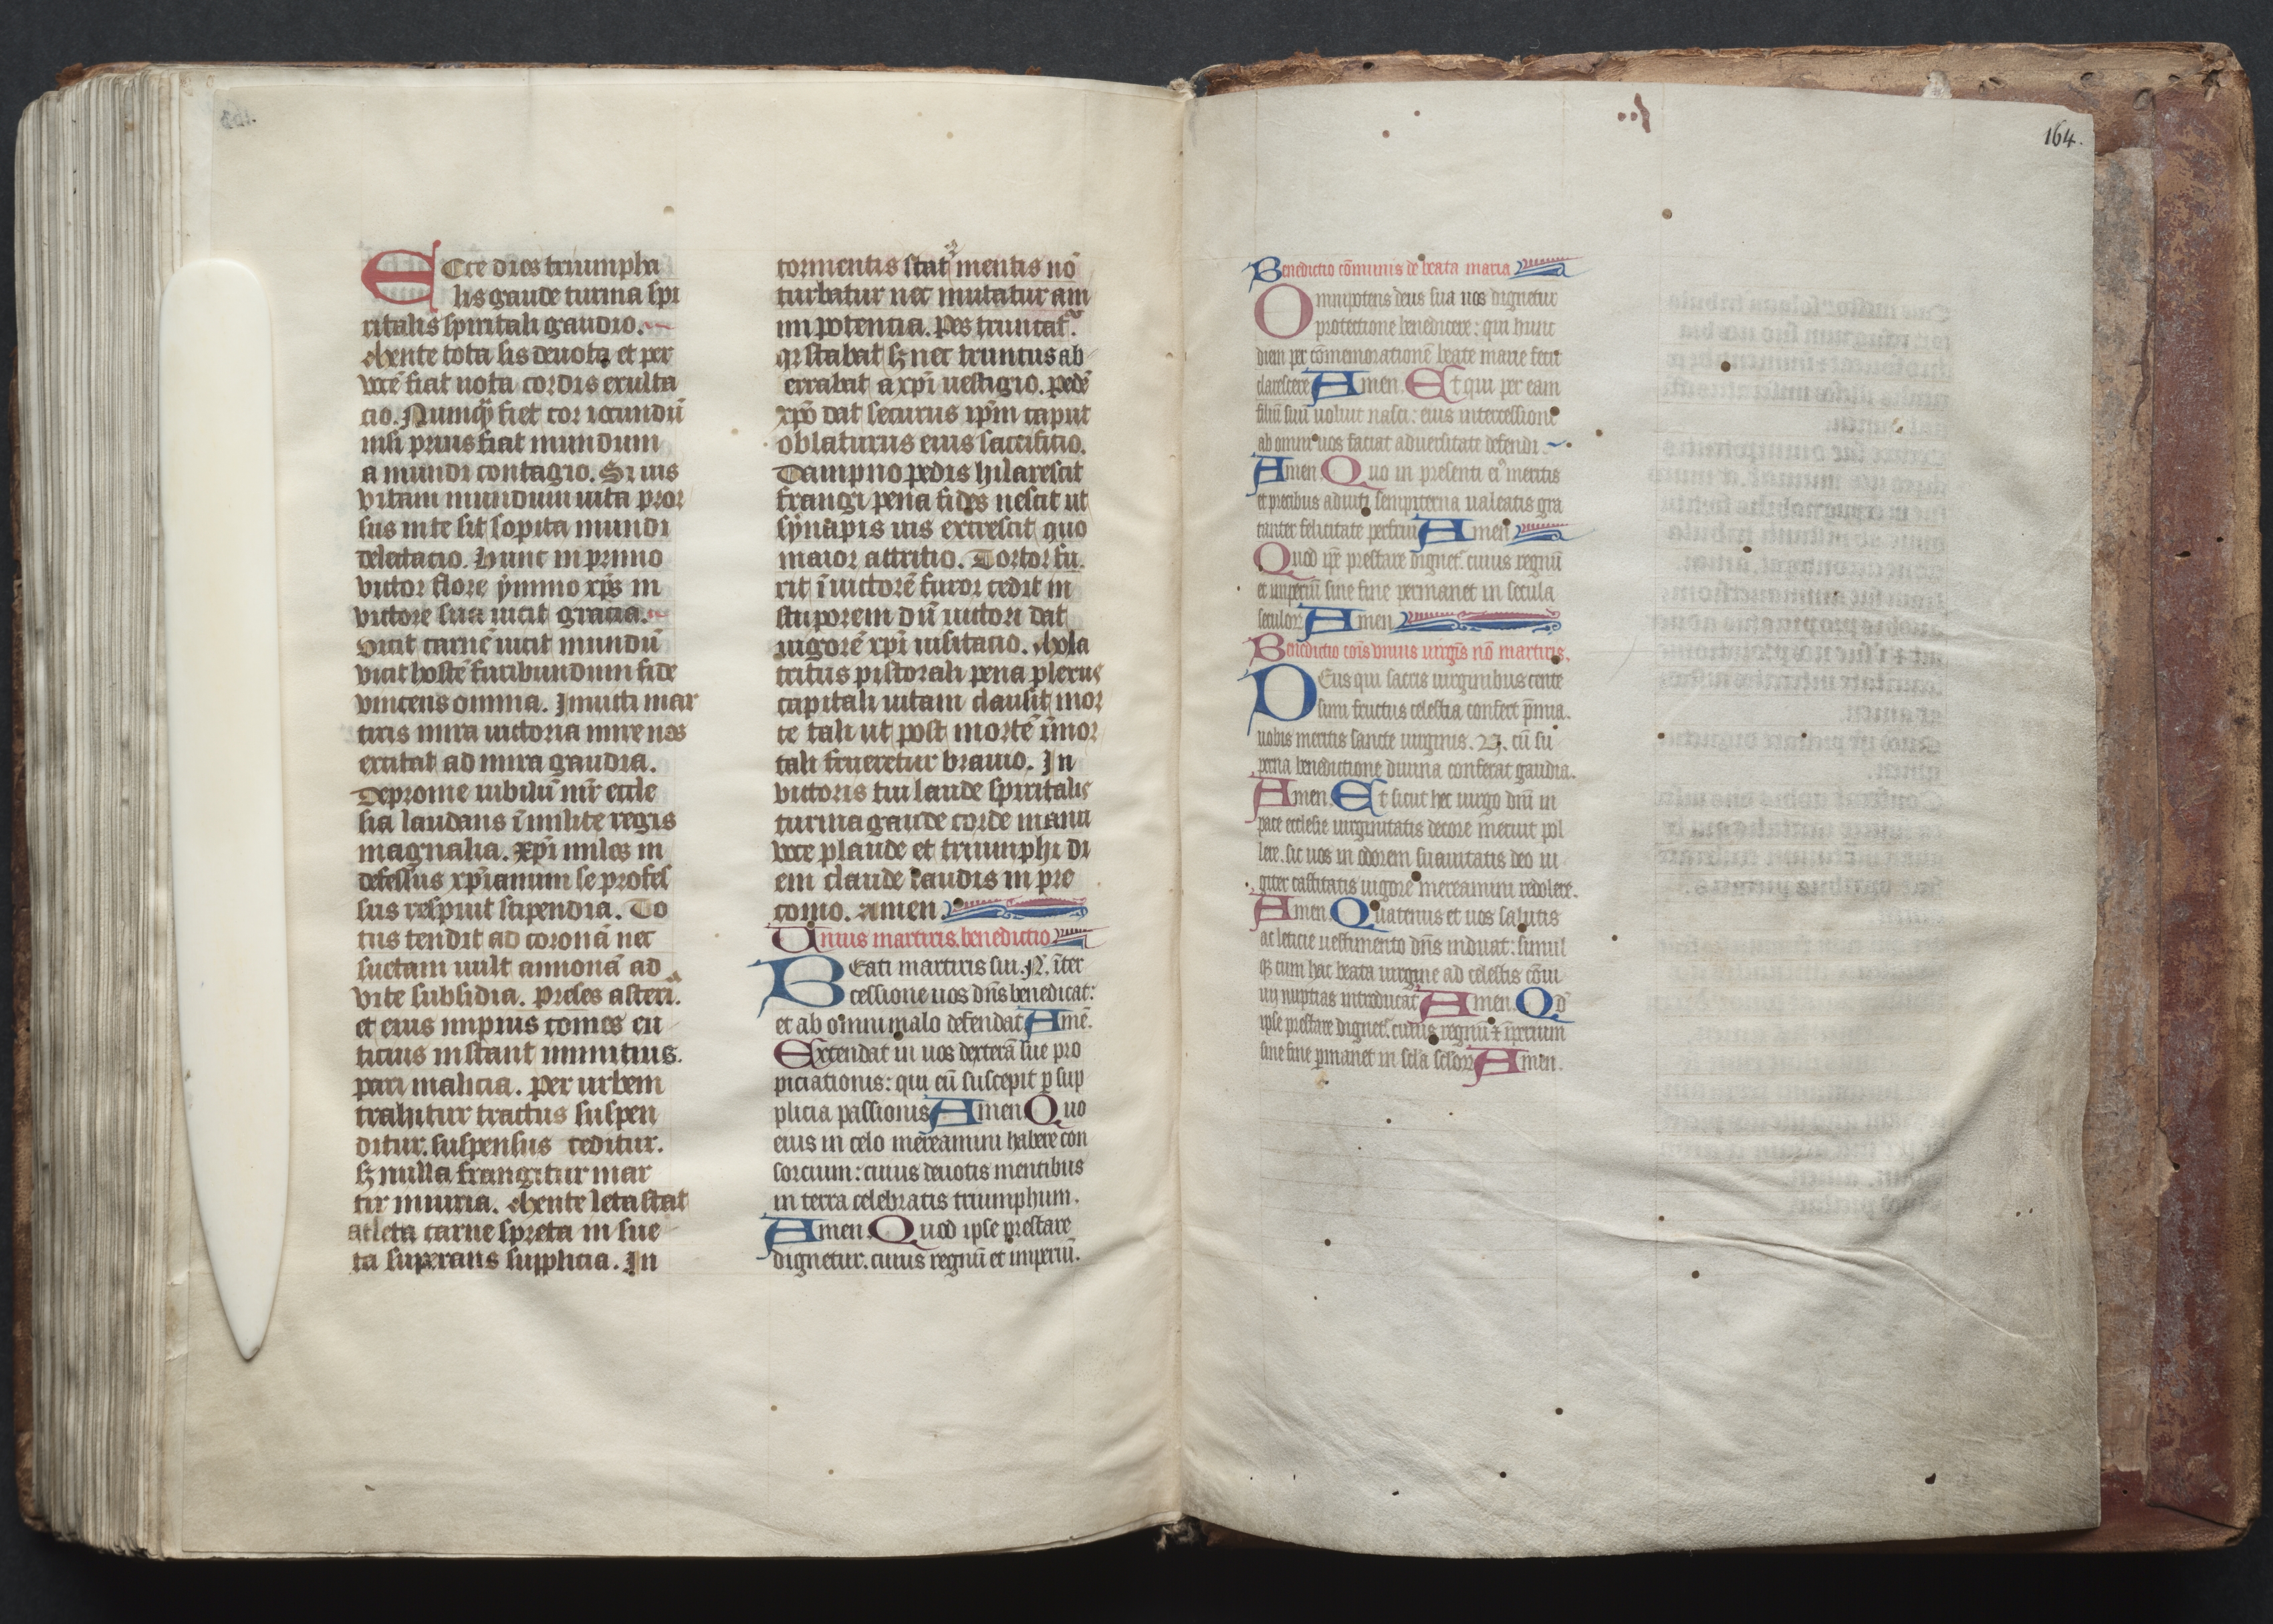 The Gotha Missal:  Fol. 164r, Text